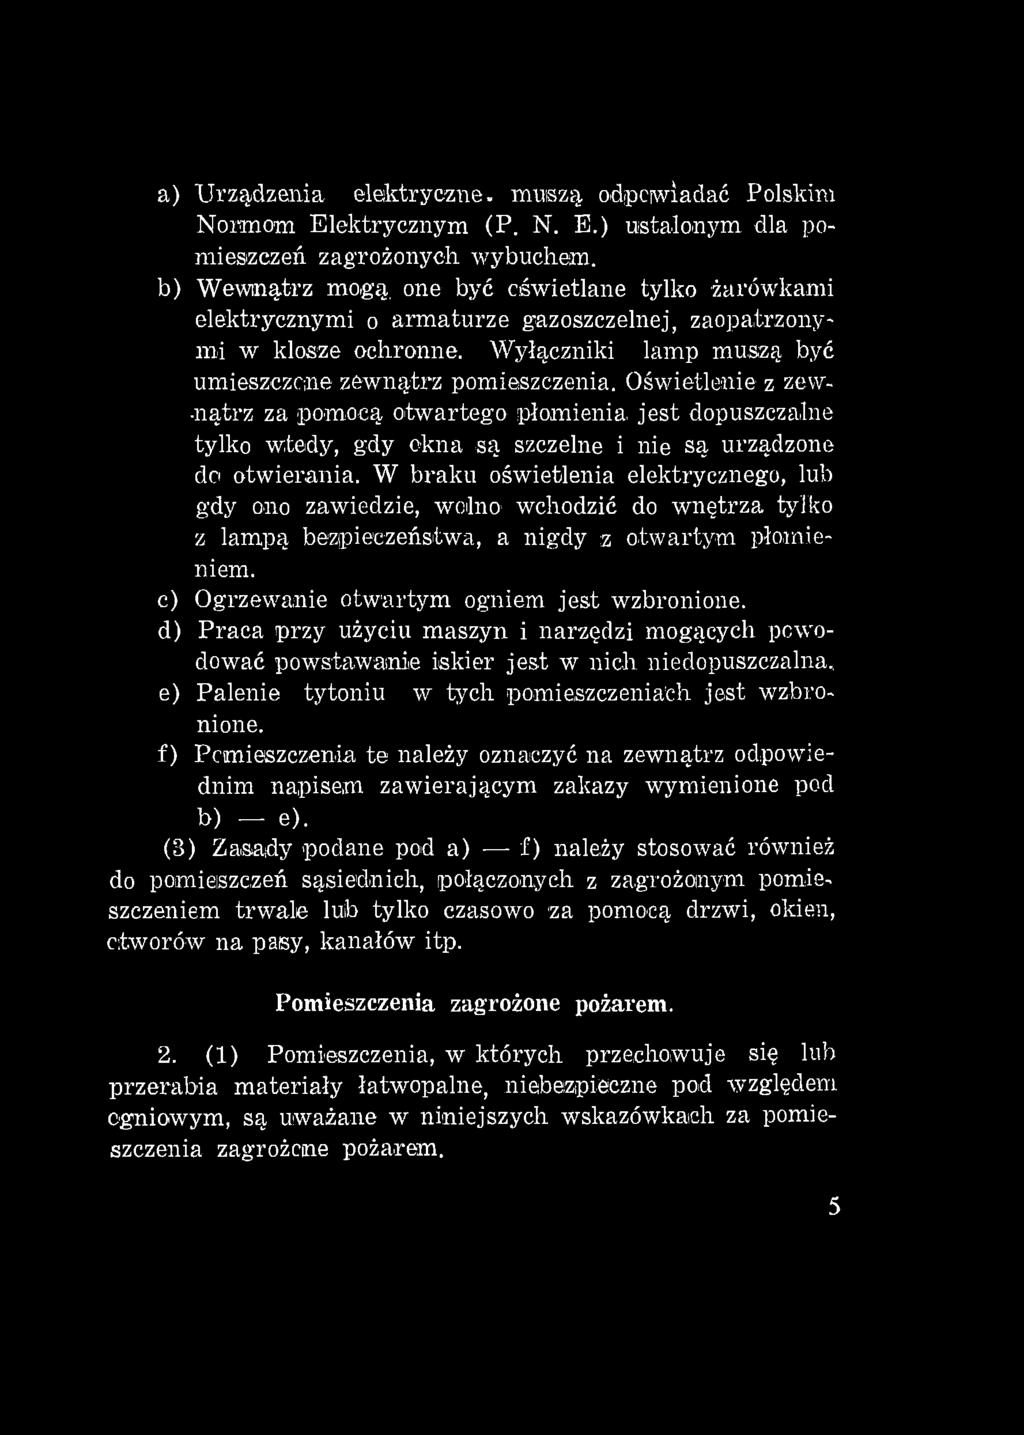 a) Urządzenia elektryczne, mniszą, odpowiadać Polskim Normom Elektrycznym (P. N. E.) ustalonym dla pomieszczeń zagrożonych wybuchem.